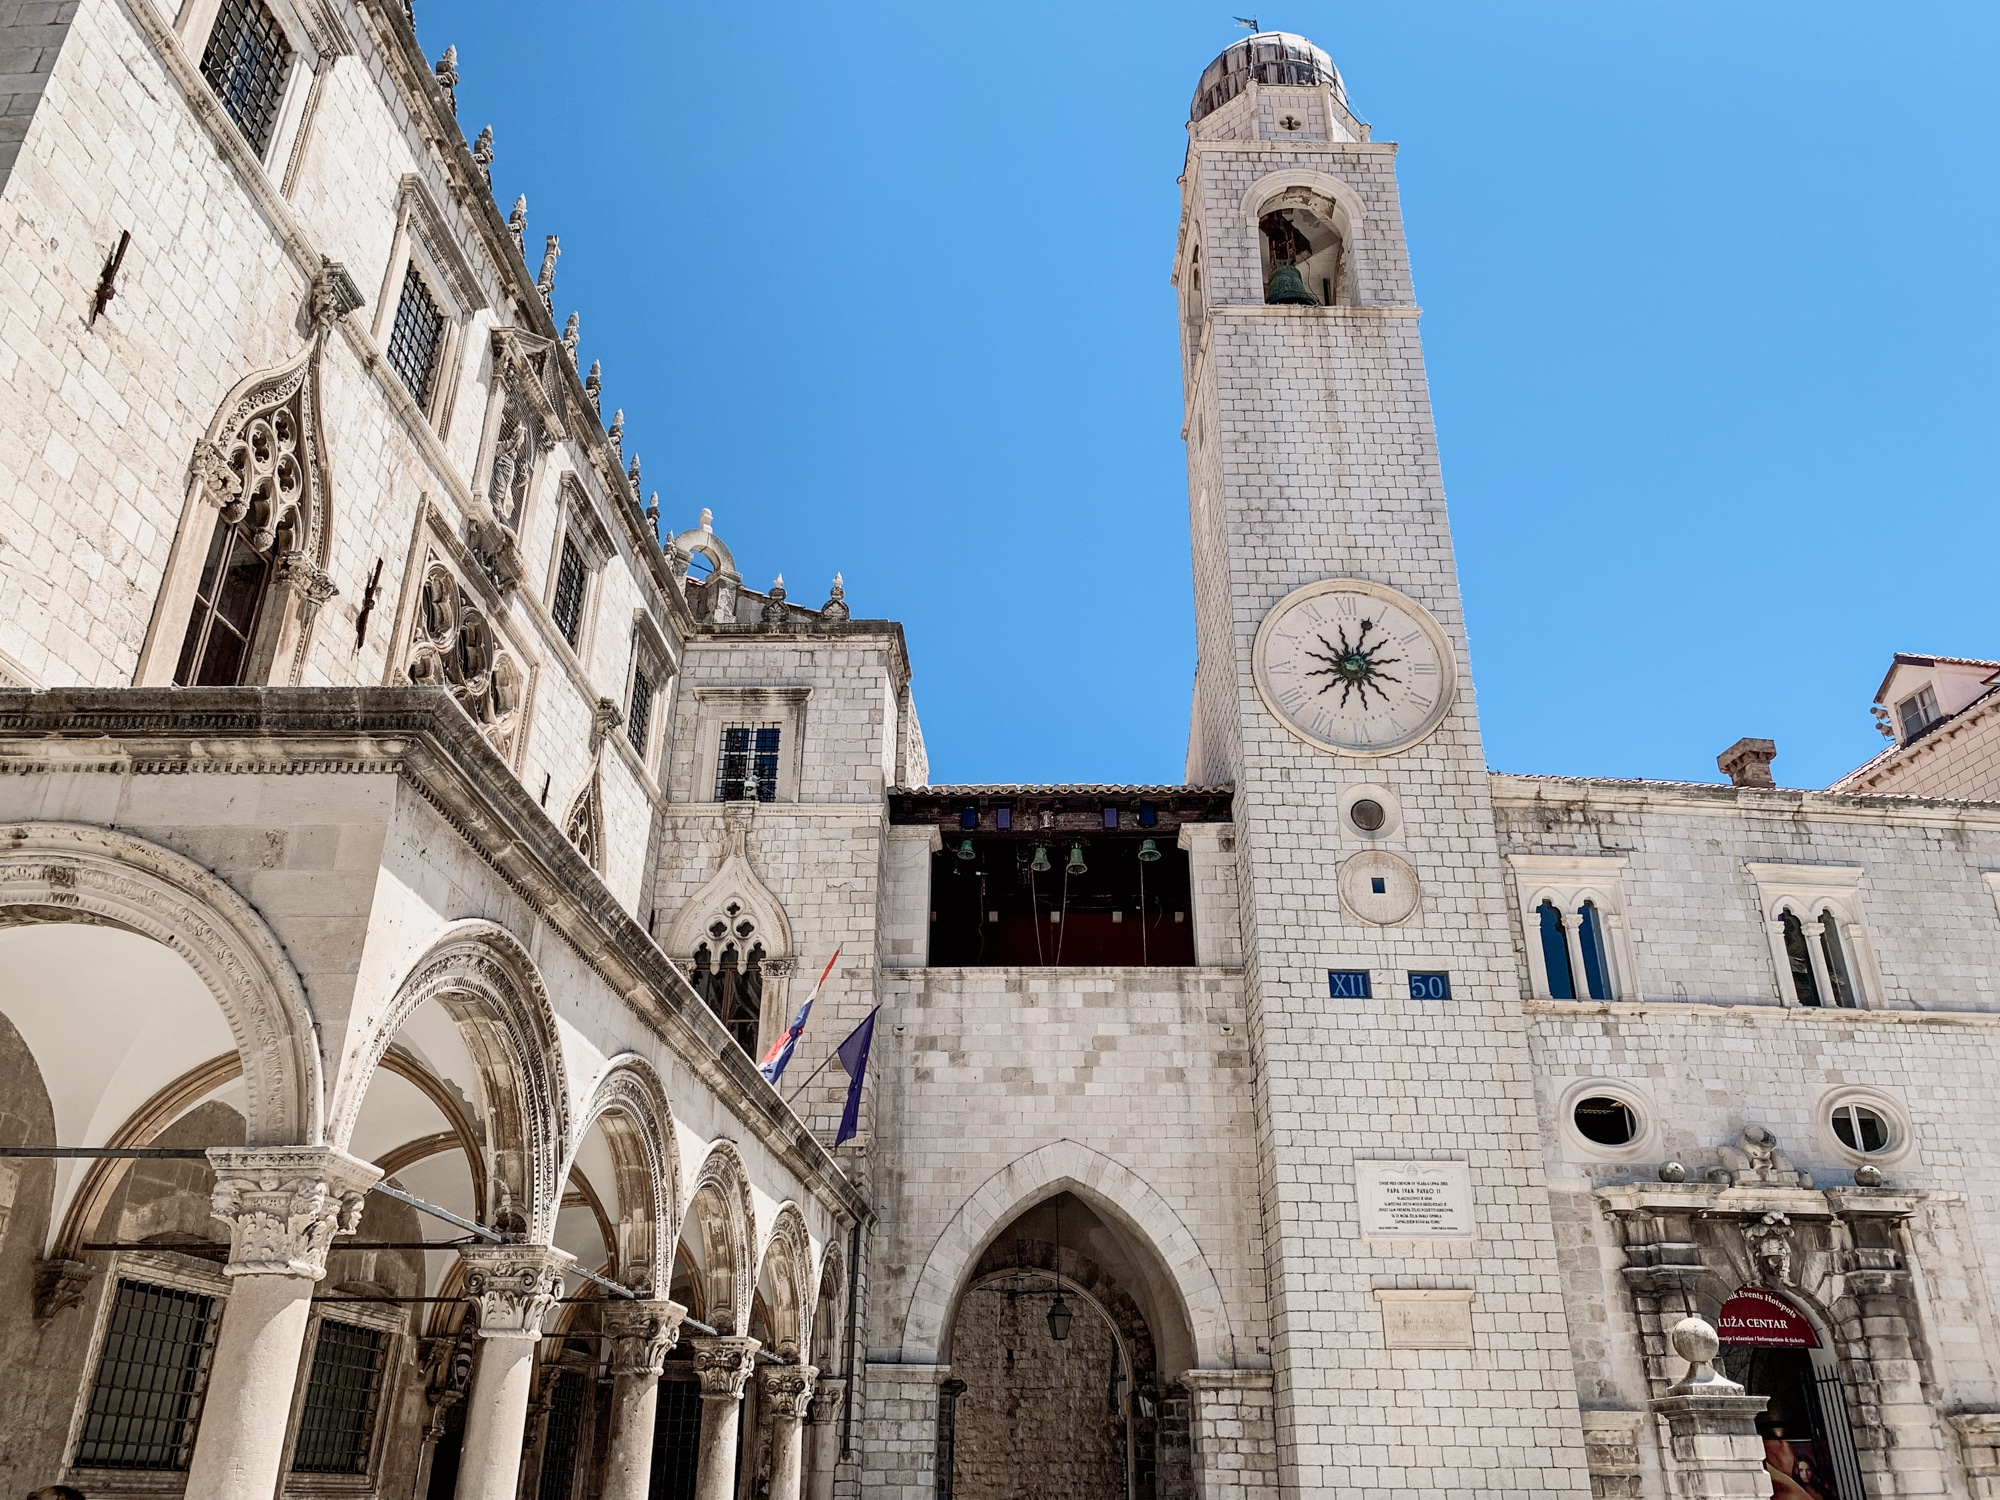 Dubrovnik Sehenswürdigkeiten Top 10: Meine Highlights und Tipps - Stradun Luza Platz